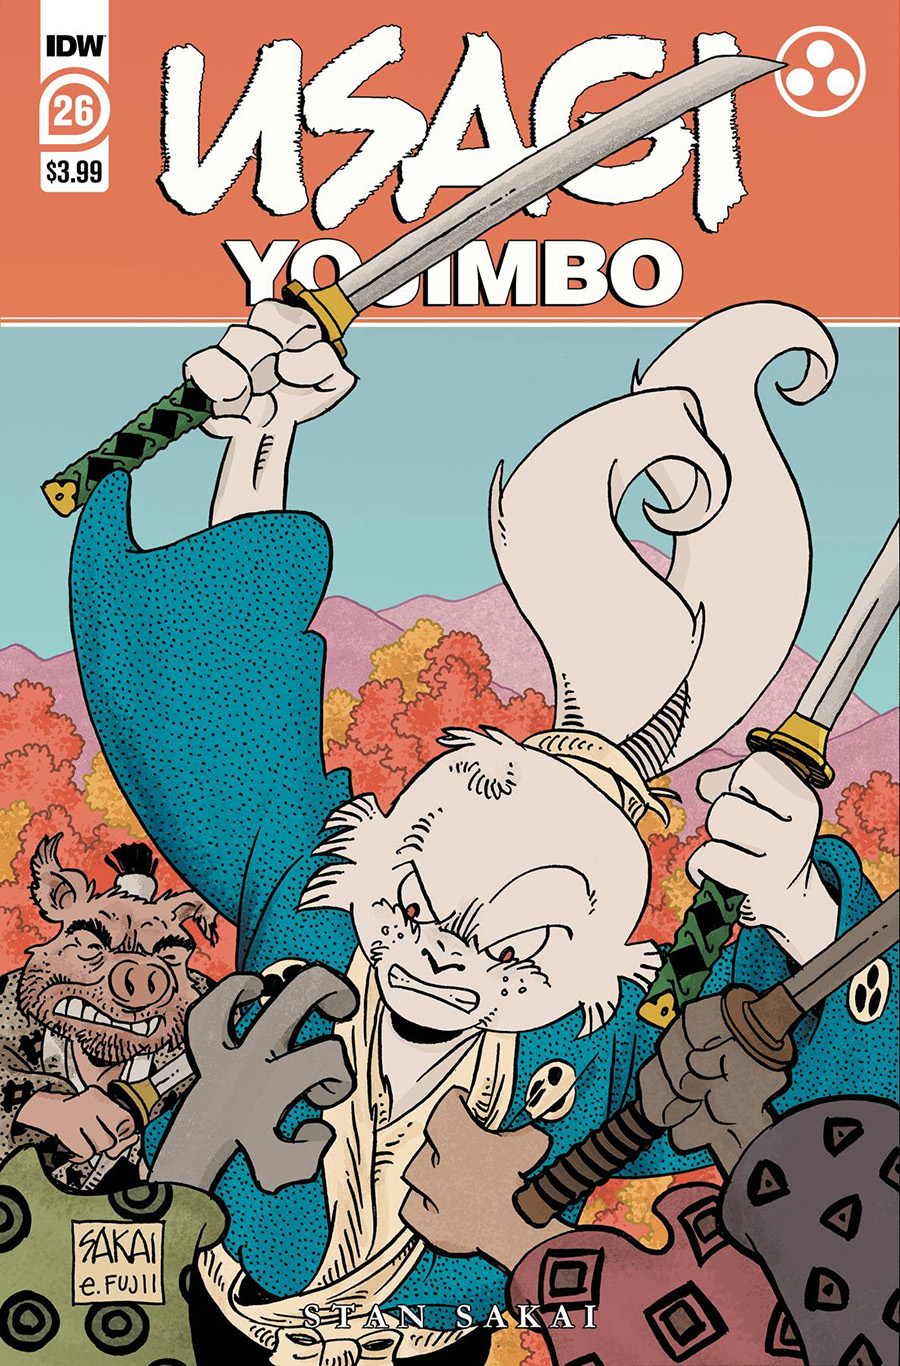 Usagi Yojimbo Vol 4 #26 Cover A Regular Stan Sakai & Julie Sakai Cover